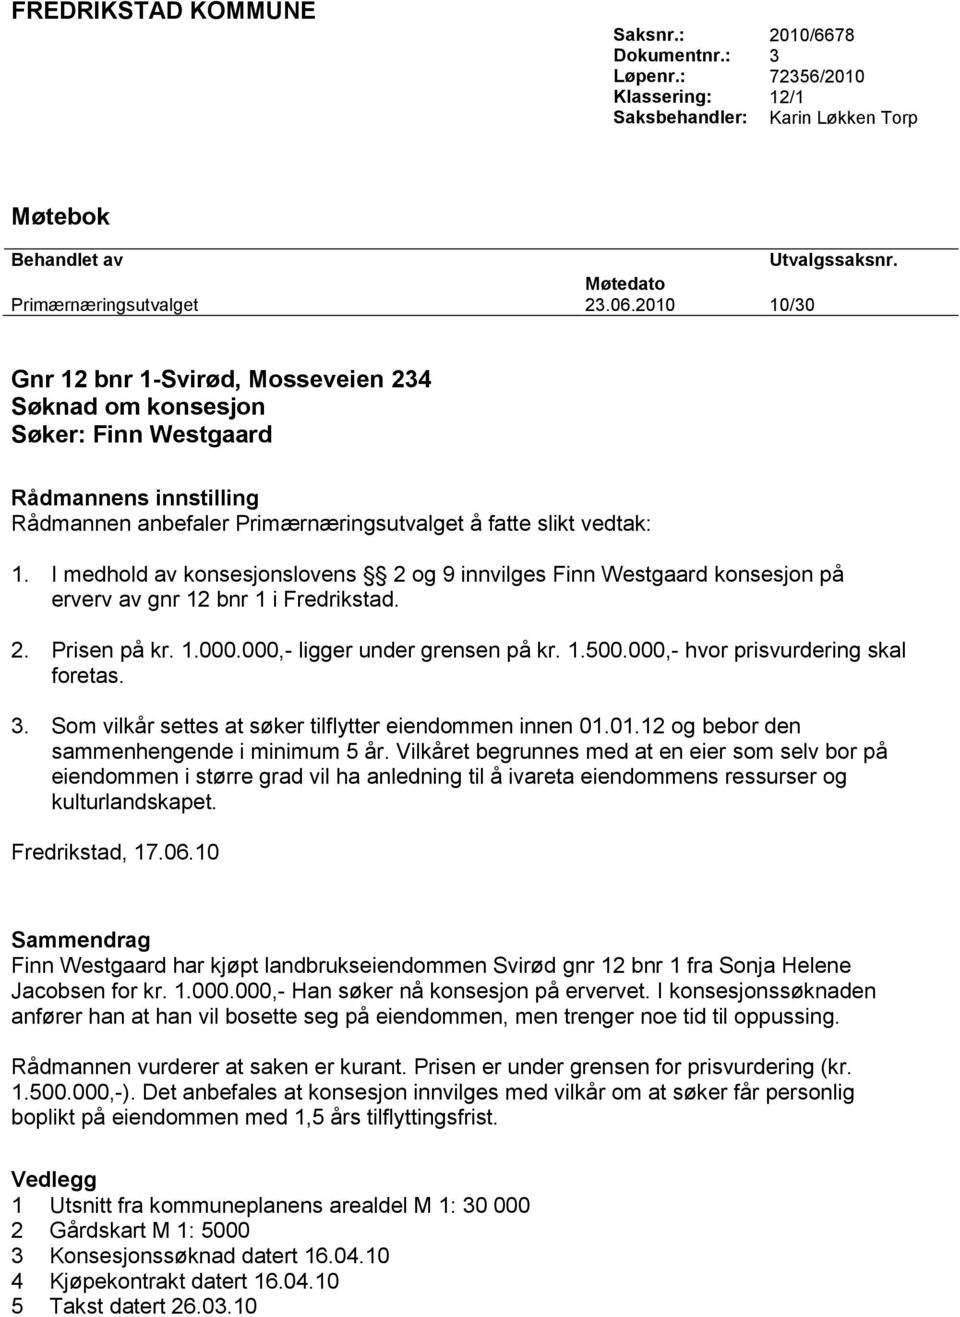 I medhold av konsesjonslovens 2 og 9 innvilges Finn Westgaard konsesjon på erverv av gnr 12 bnr 1 i Fredrikstad. 2. Prisen på kr. 1.000.000,- ligger under grensen på kr. 1.500.